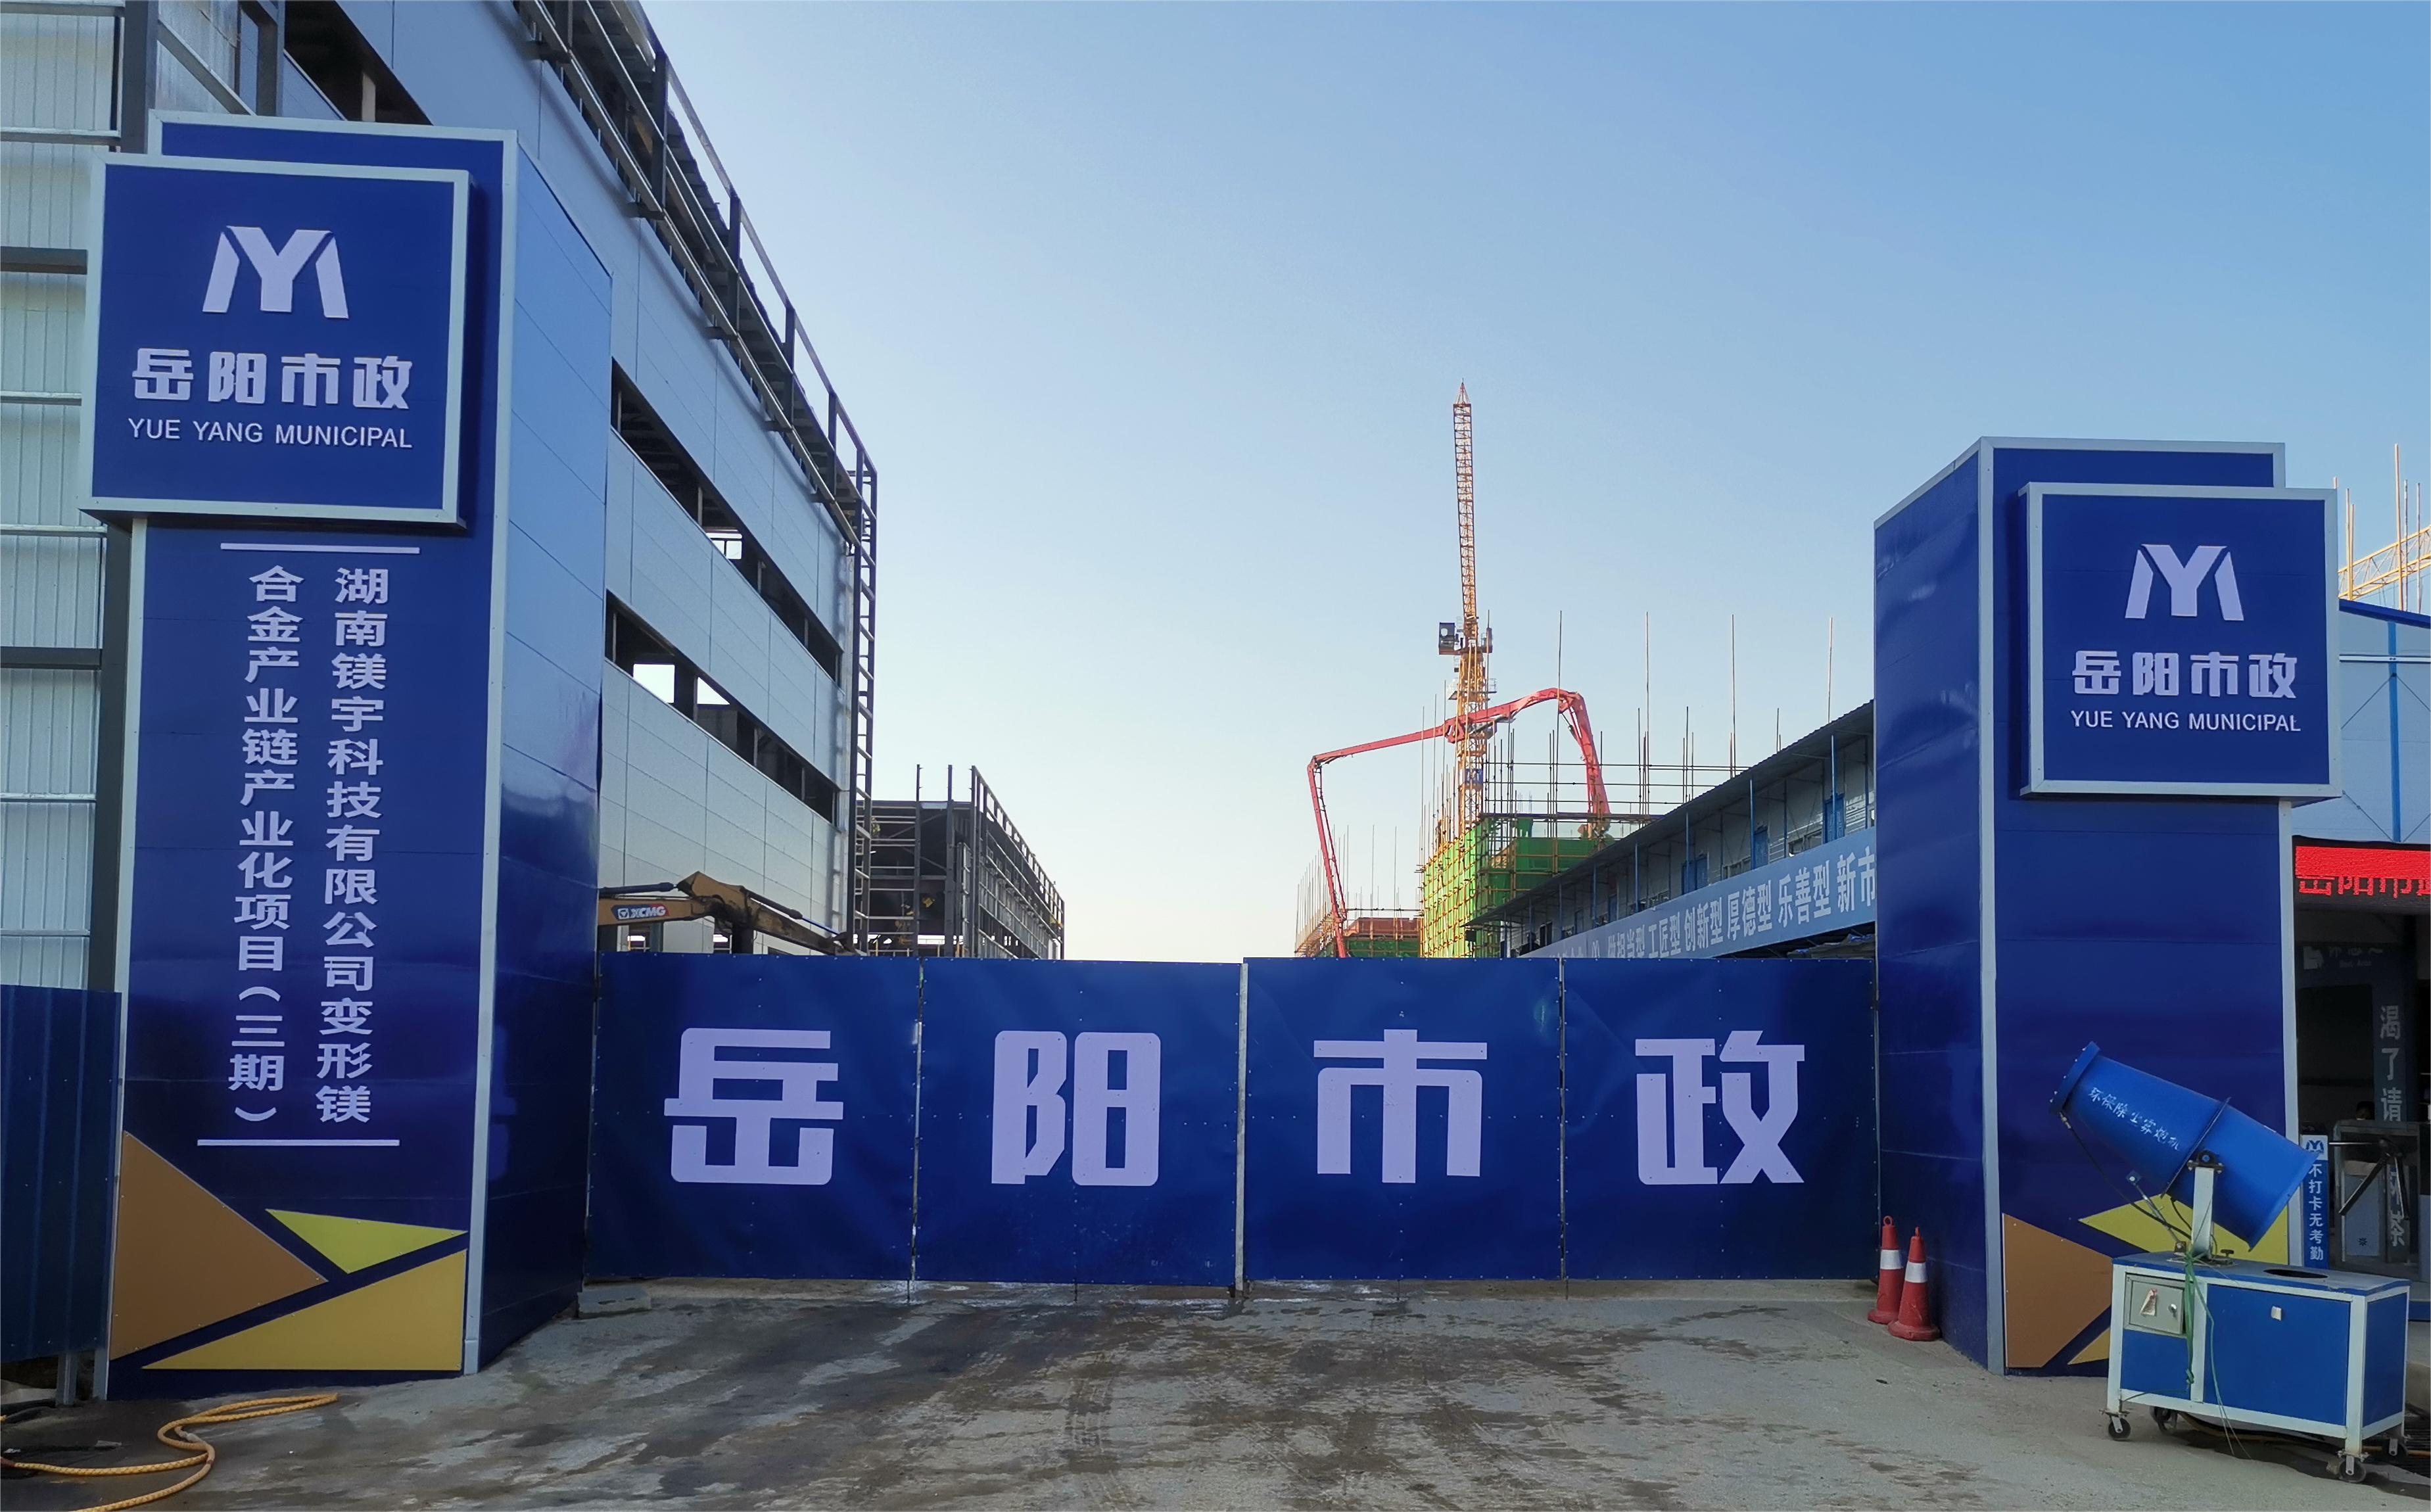 岳阳市市政建设有限公司—高性能变形镁合金产业链产业化项目倒班宿舍、食堂、综合楼项目